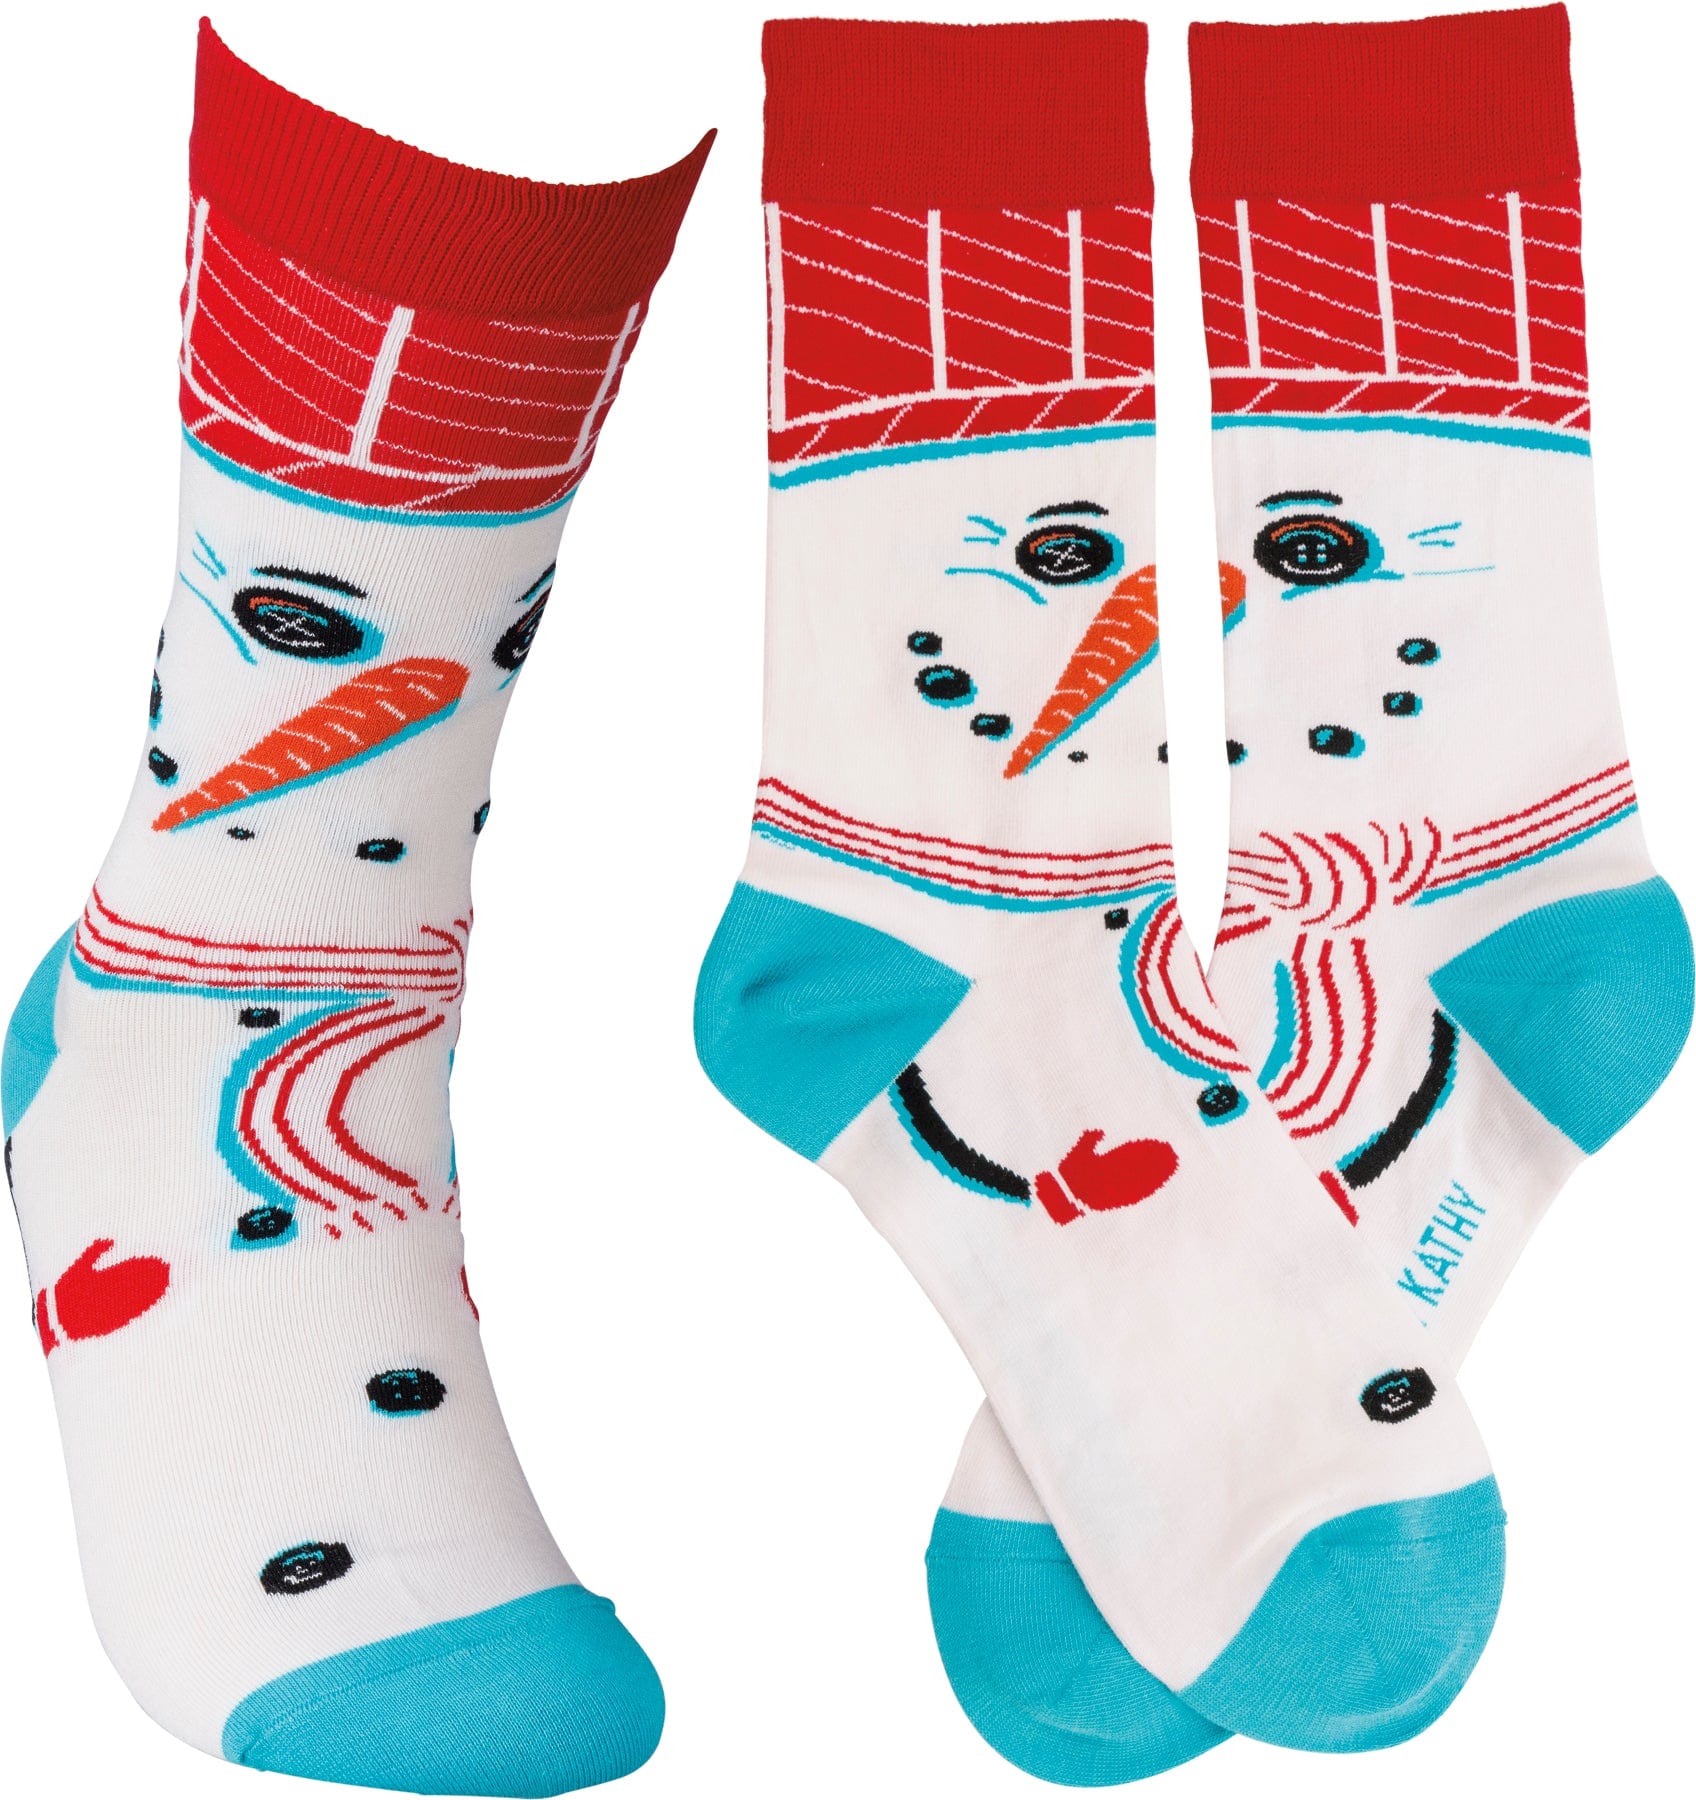 Socks One Size Fits Most Socks - Snowman PBK-39462